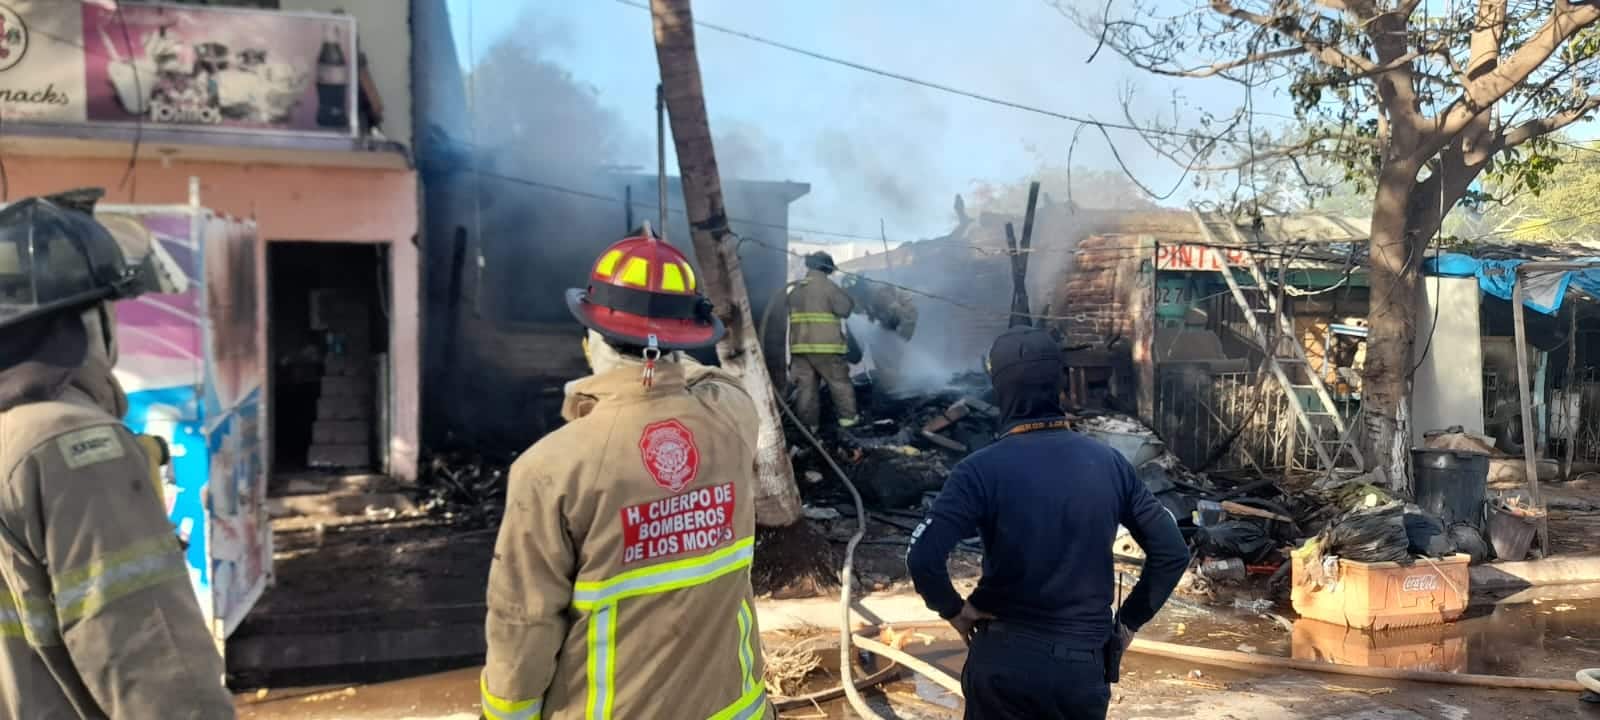 Fuerte incendio arrasa con una vivienda en la colonia Anahuac de Los Mochis